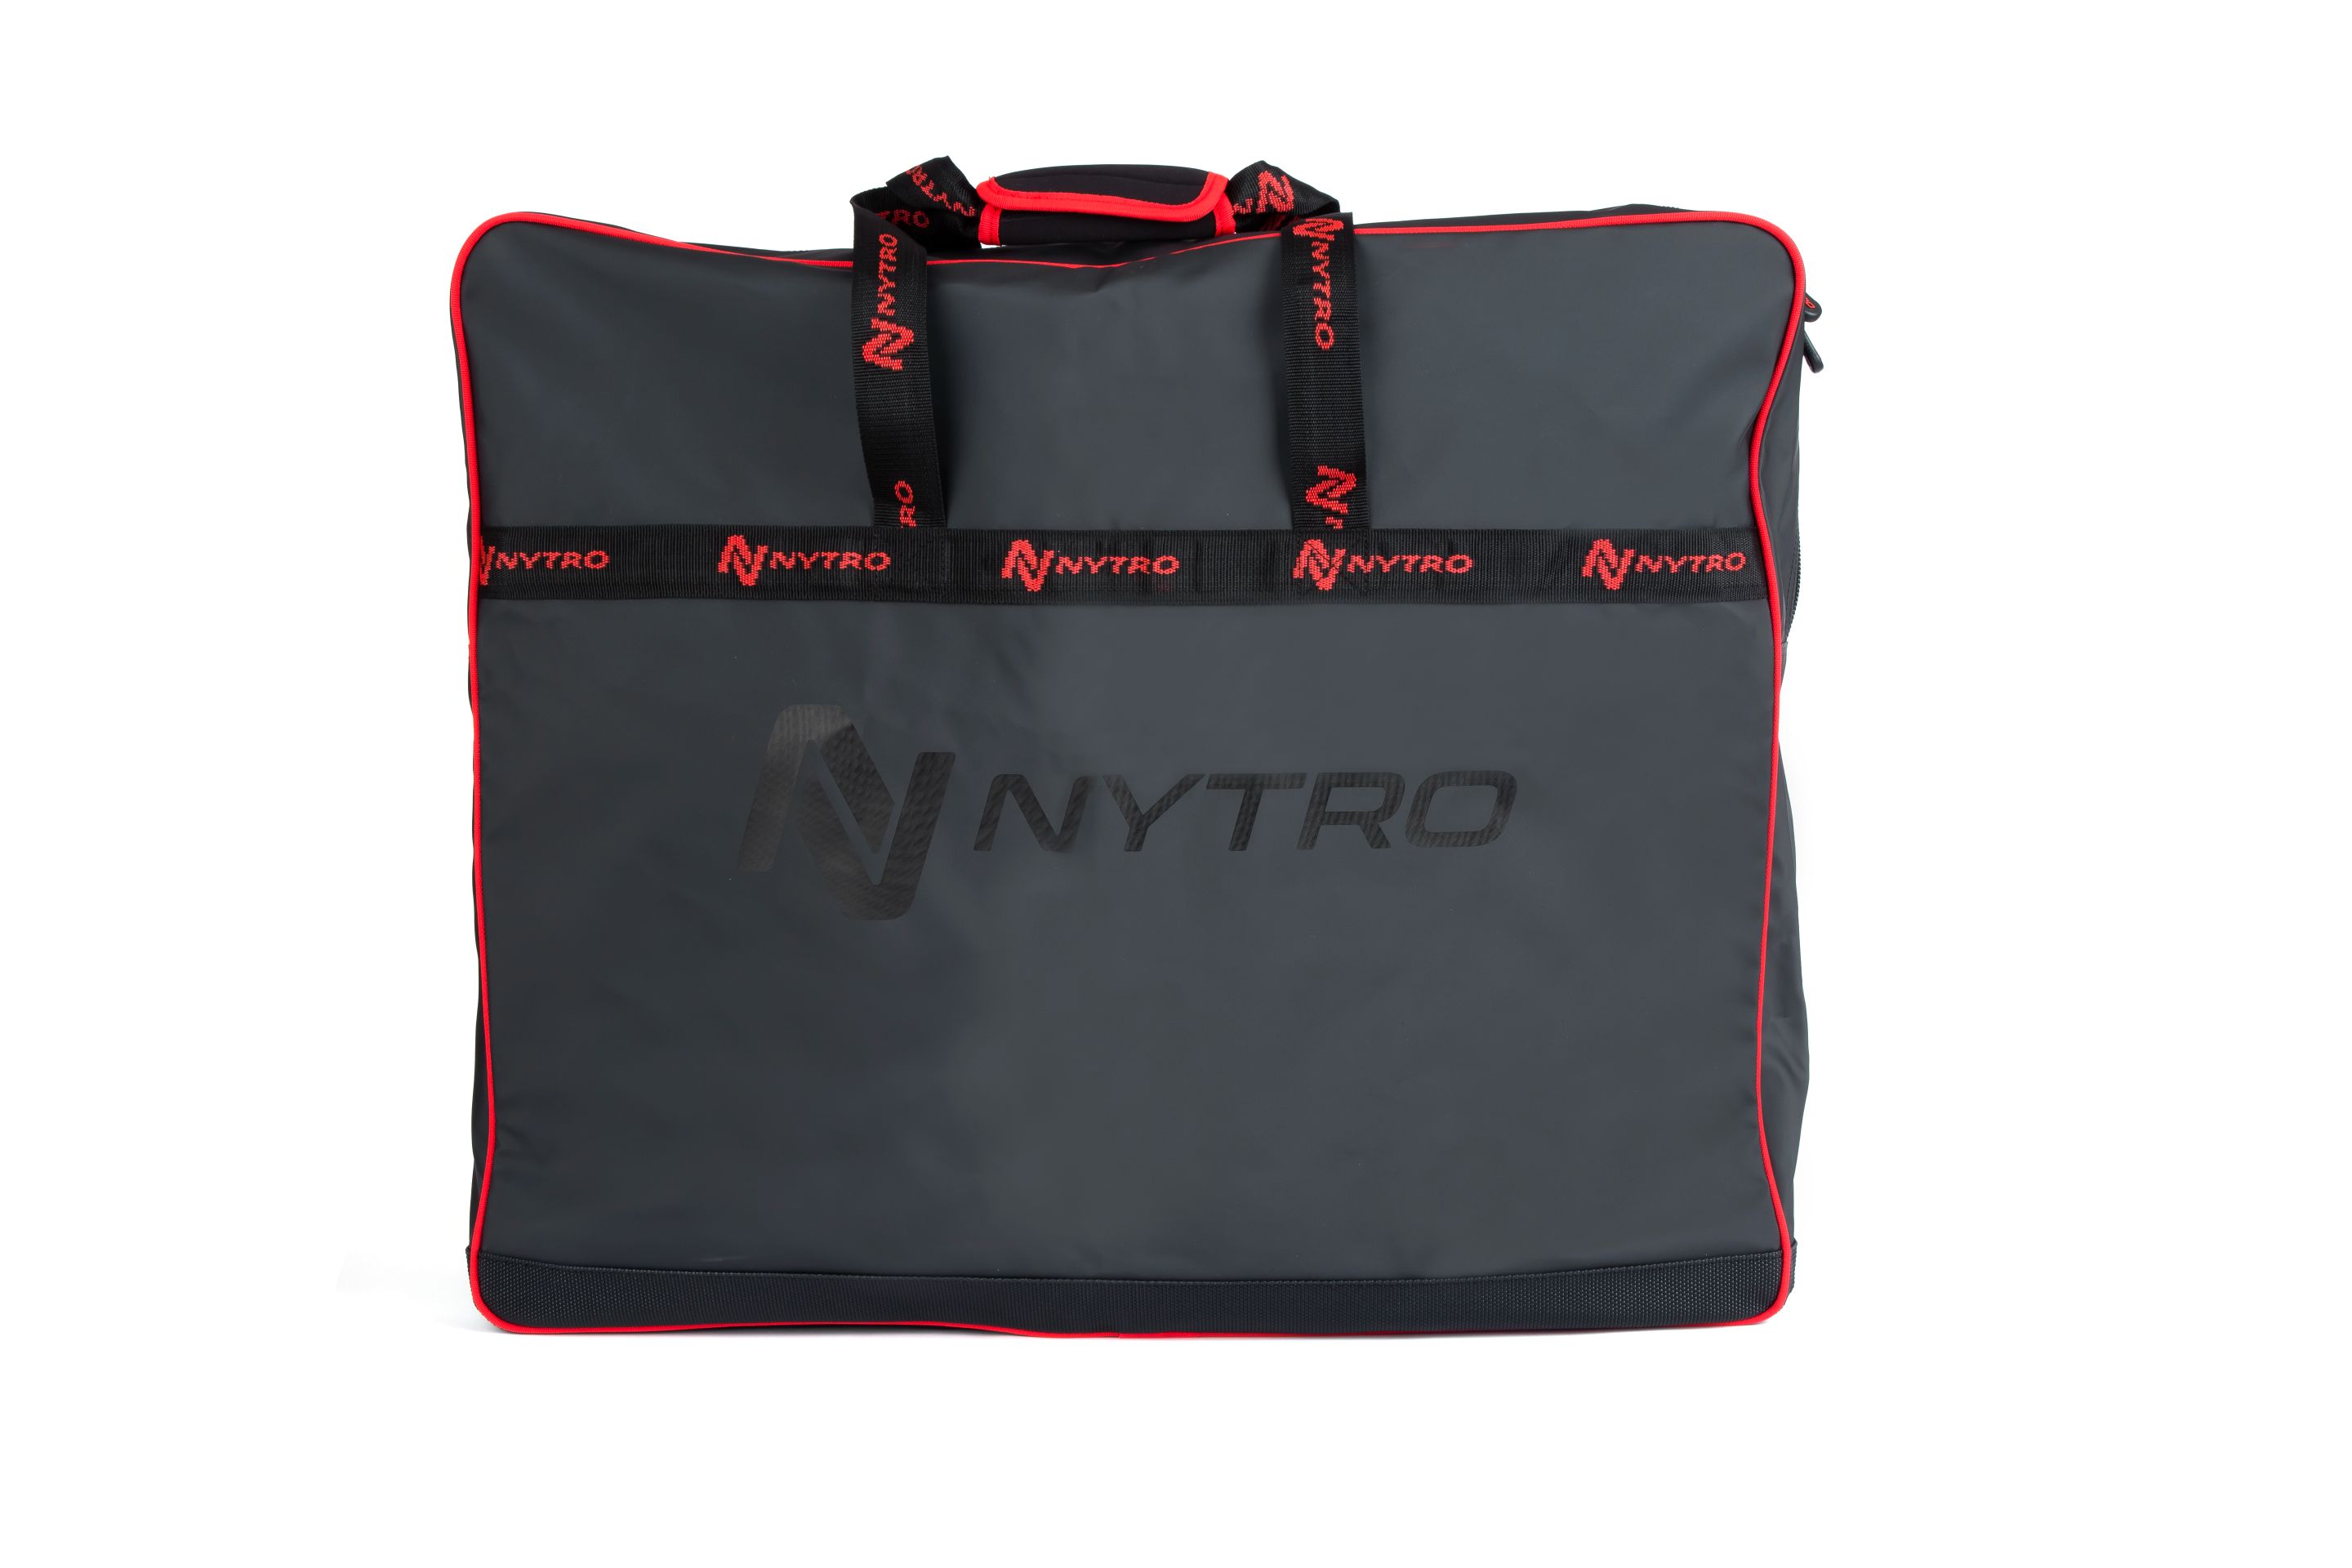 Nytro Sublime Net & Tray Bag